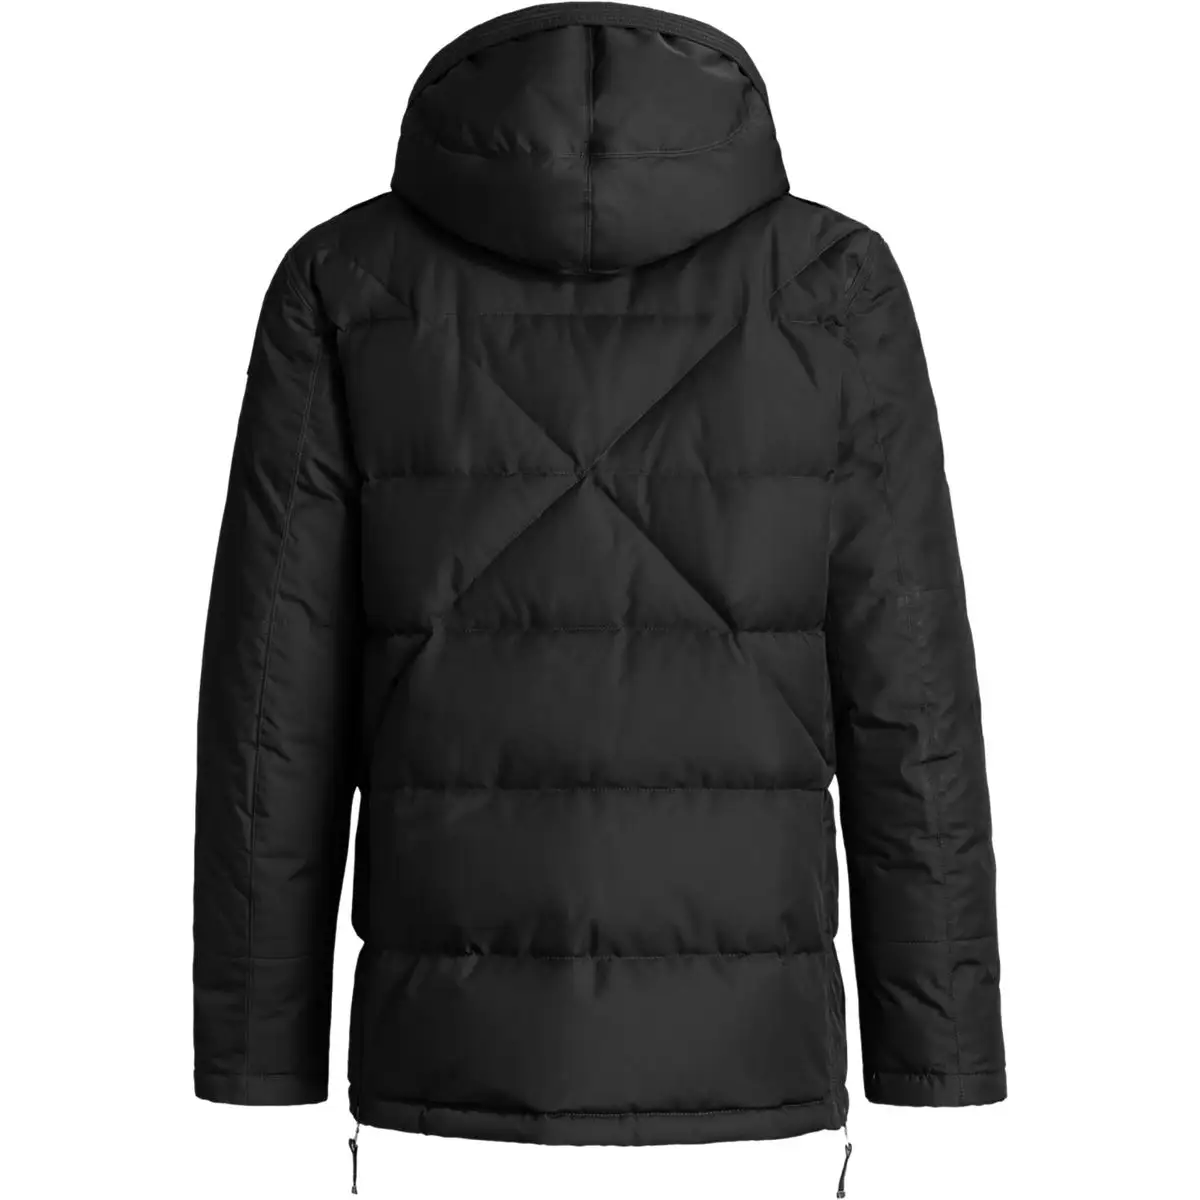 Bayan mont 2020 kış sıcak balon ceket özel logo uzun ceket kürk içinde sıcak astar